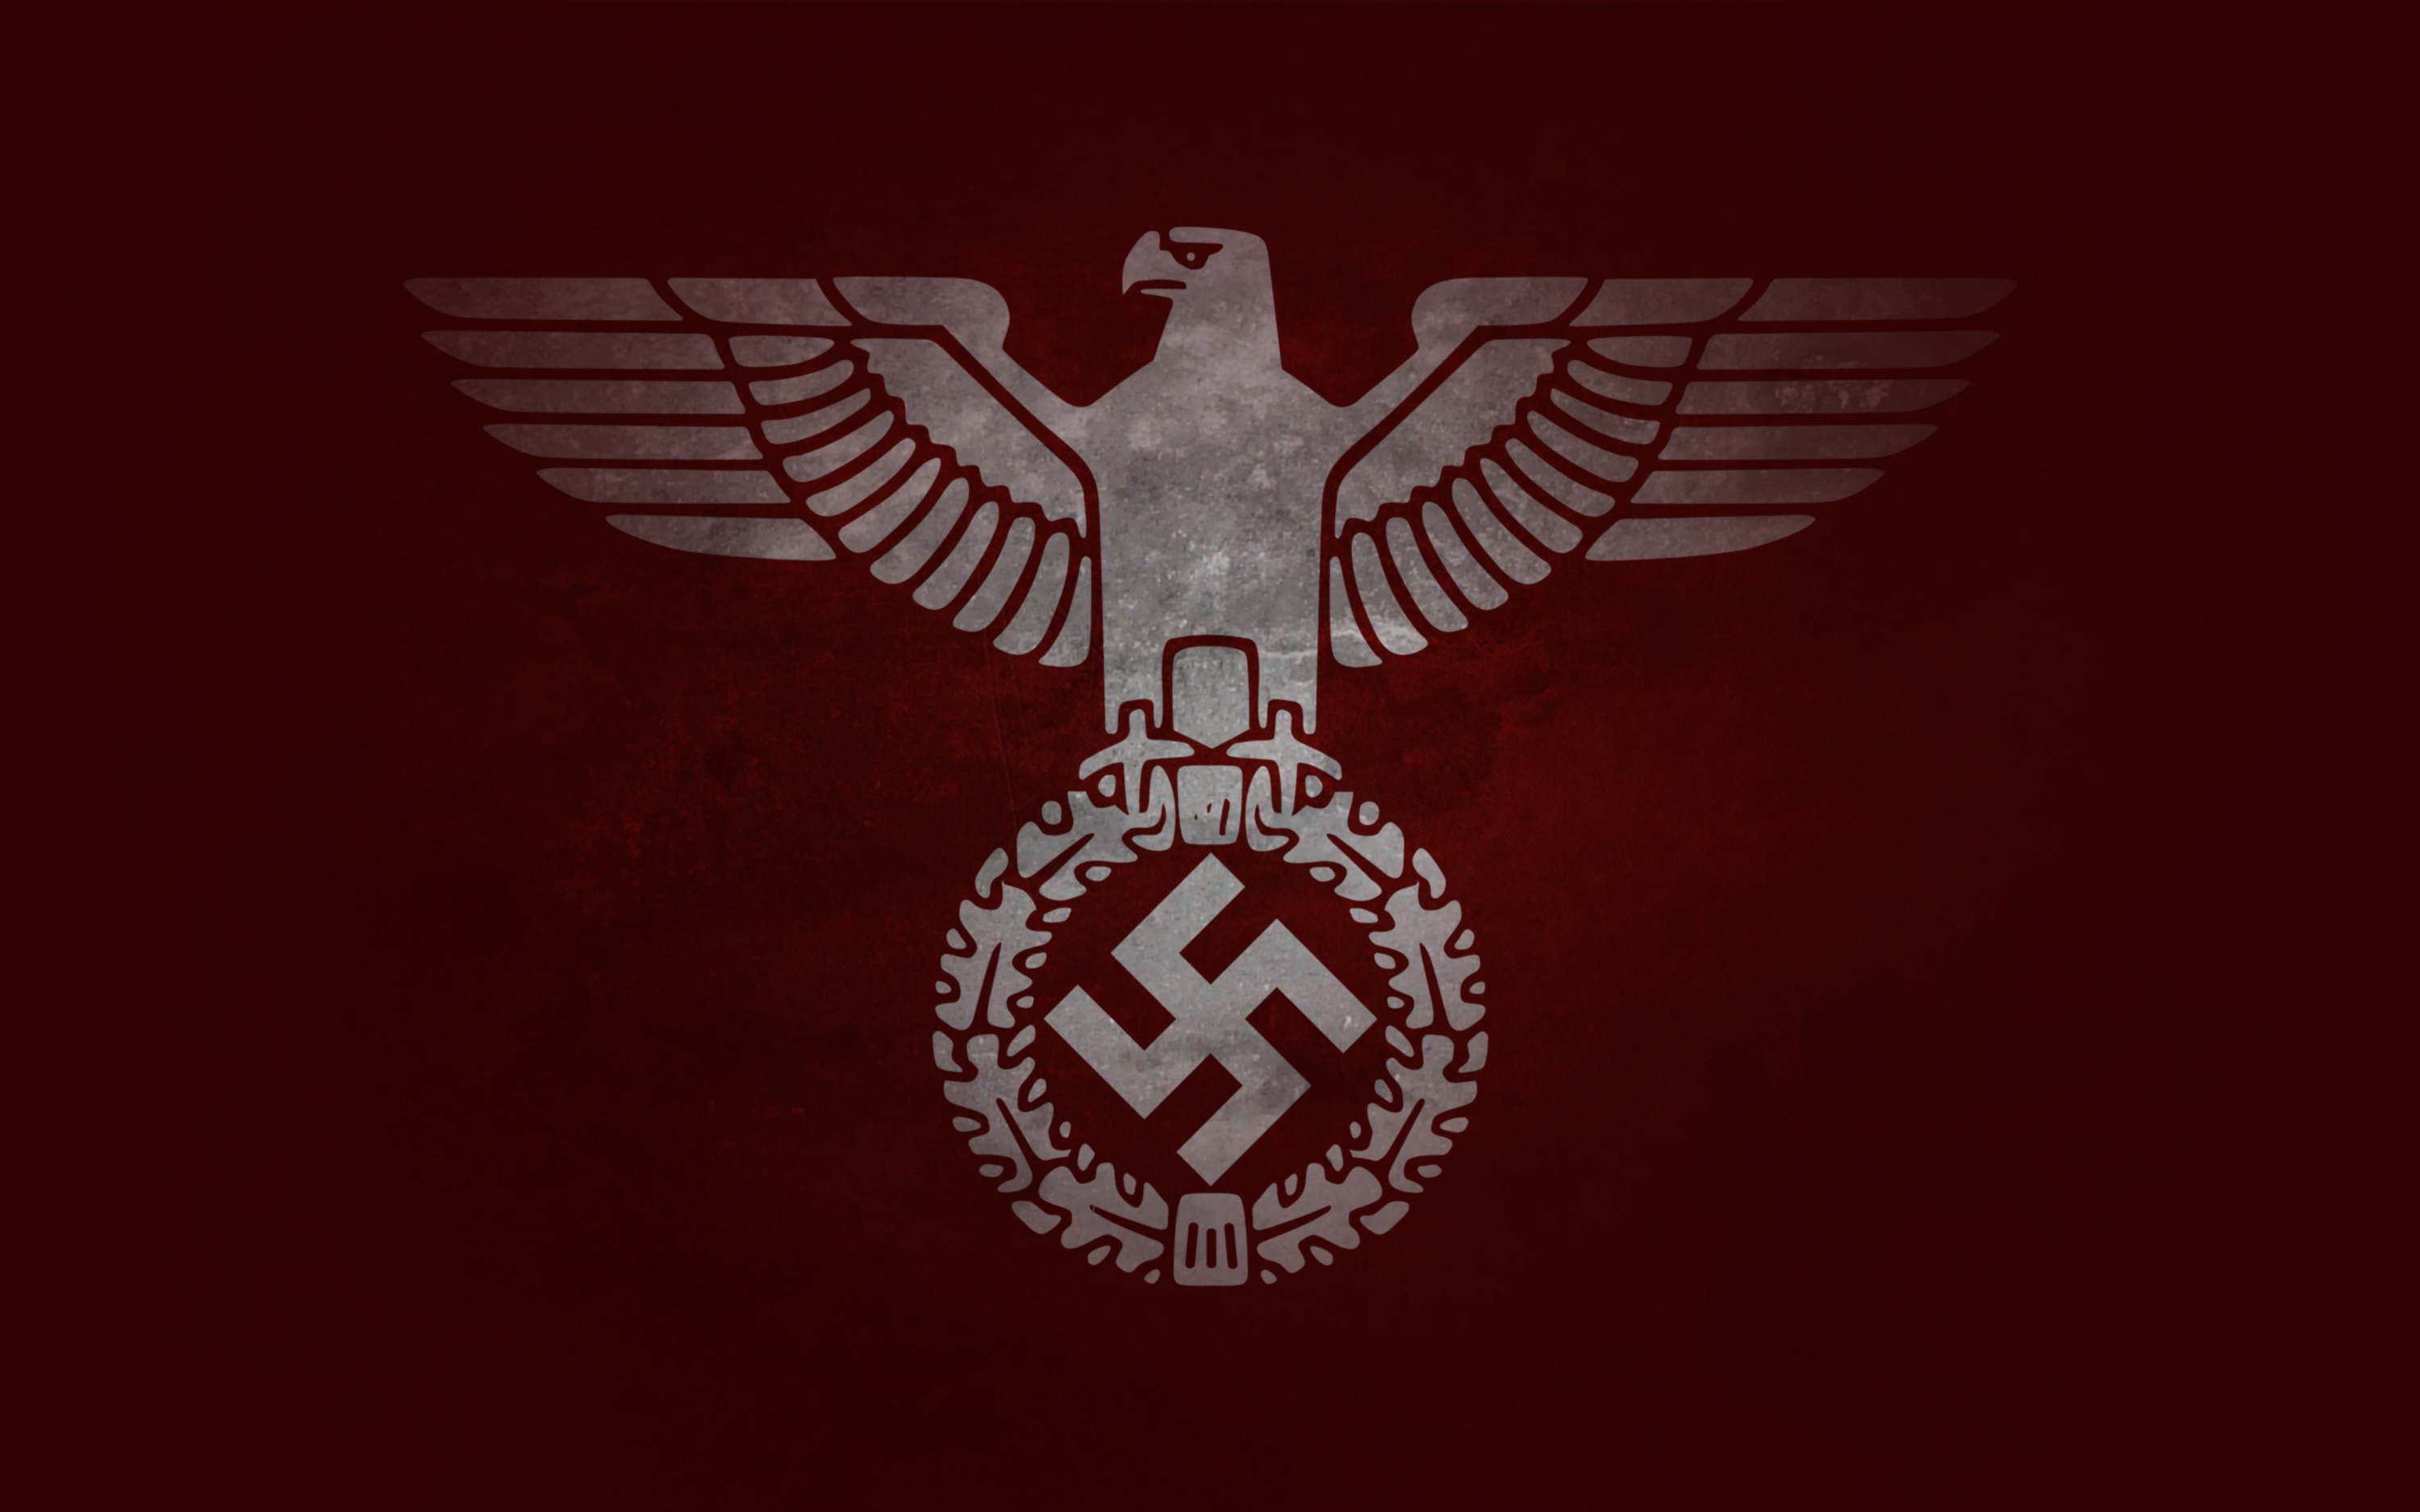 Фон сс. Имперский Орел третьего рейха. Флаг нацистской Германии с орлом. Герб нацистской Германии третьего рейха. Флаг третьего рейха СС.